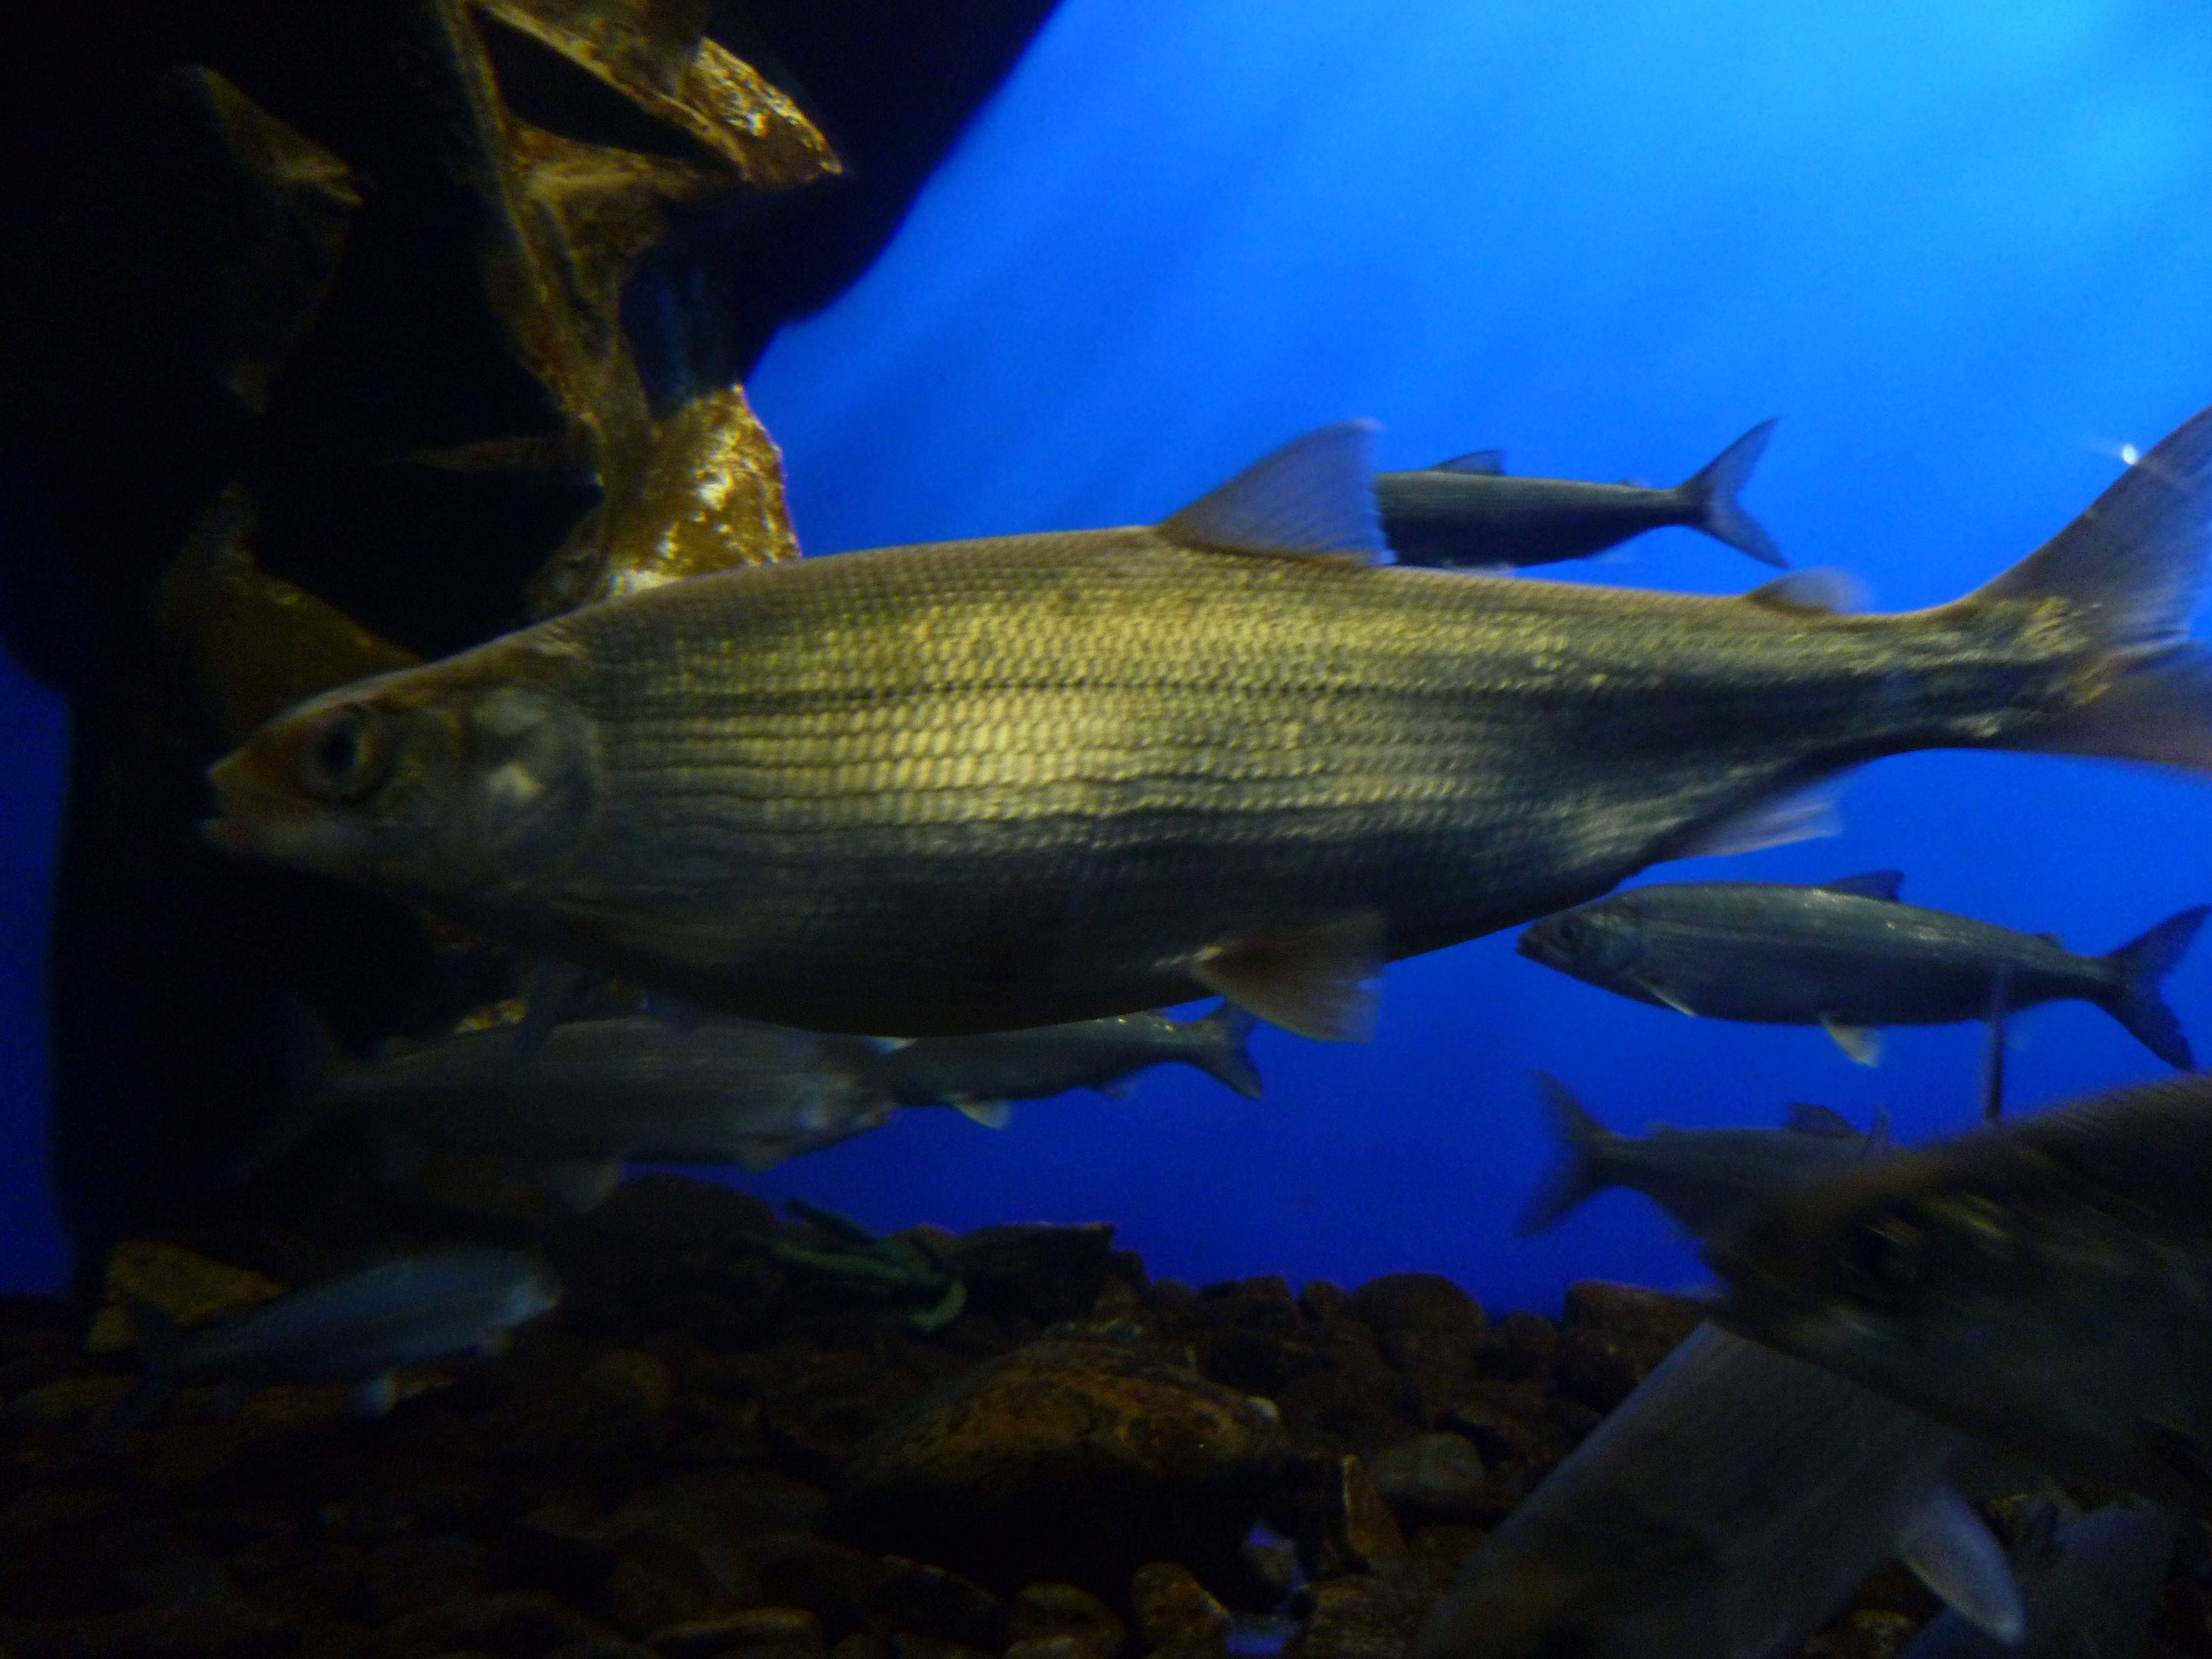 Омуль рыба из семейства сиговых. описание и среда обитания